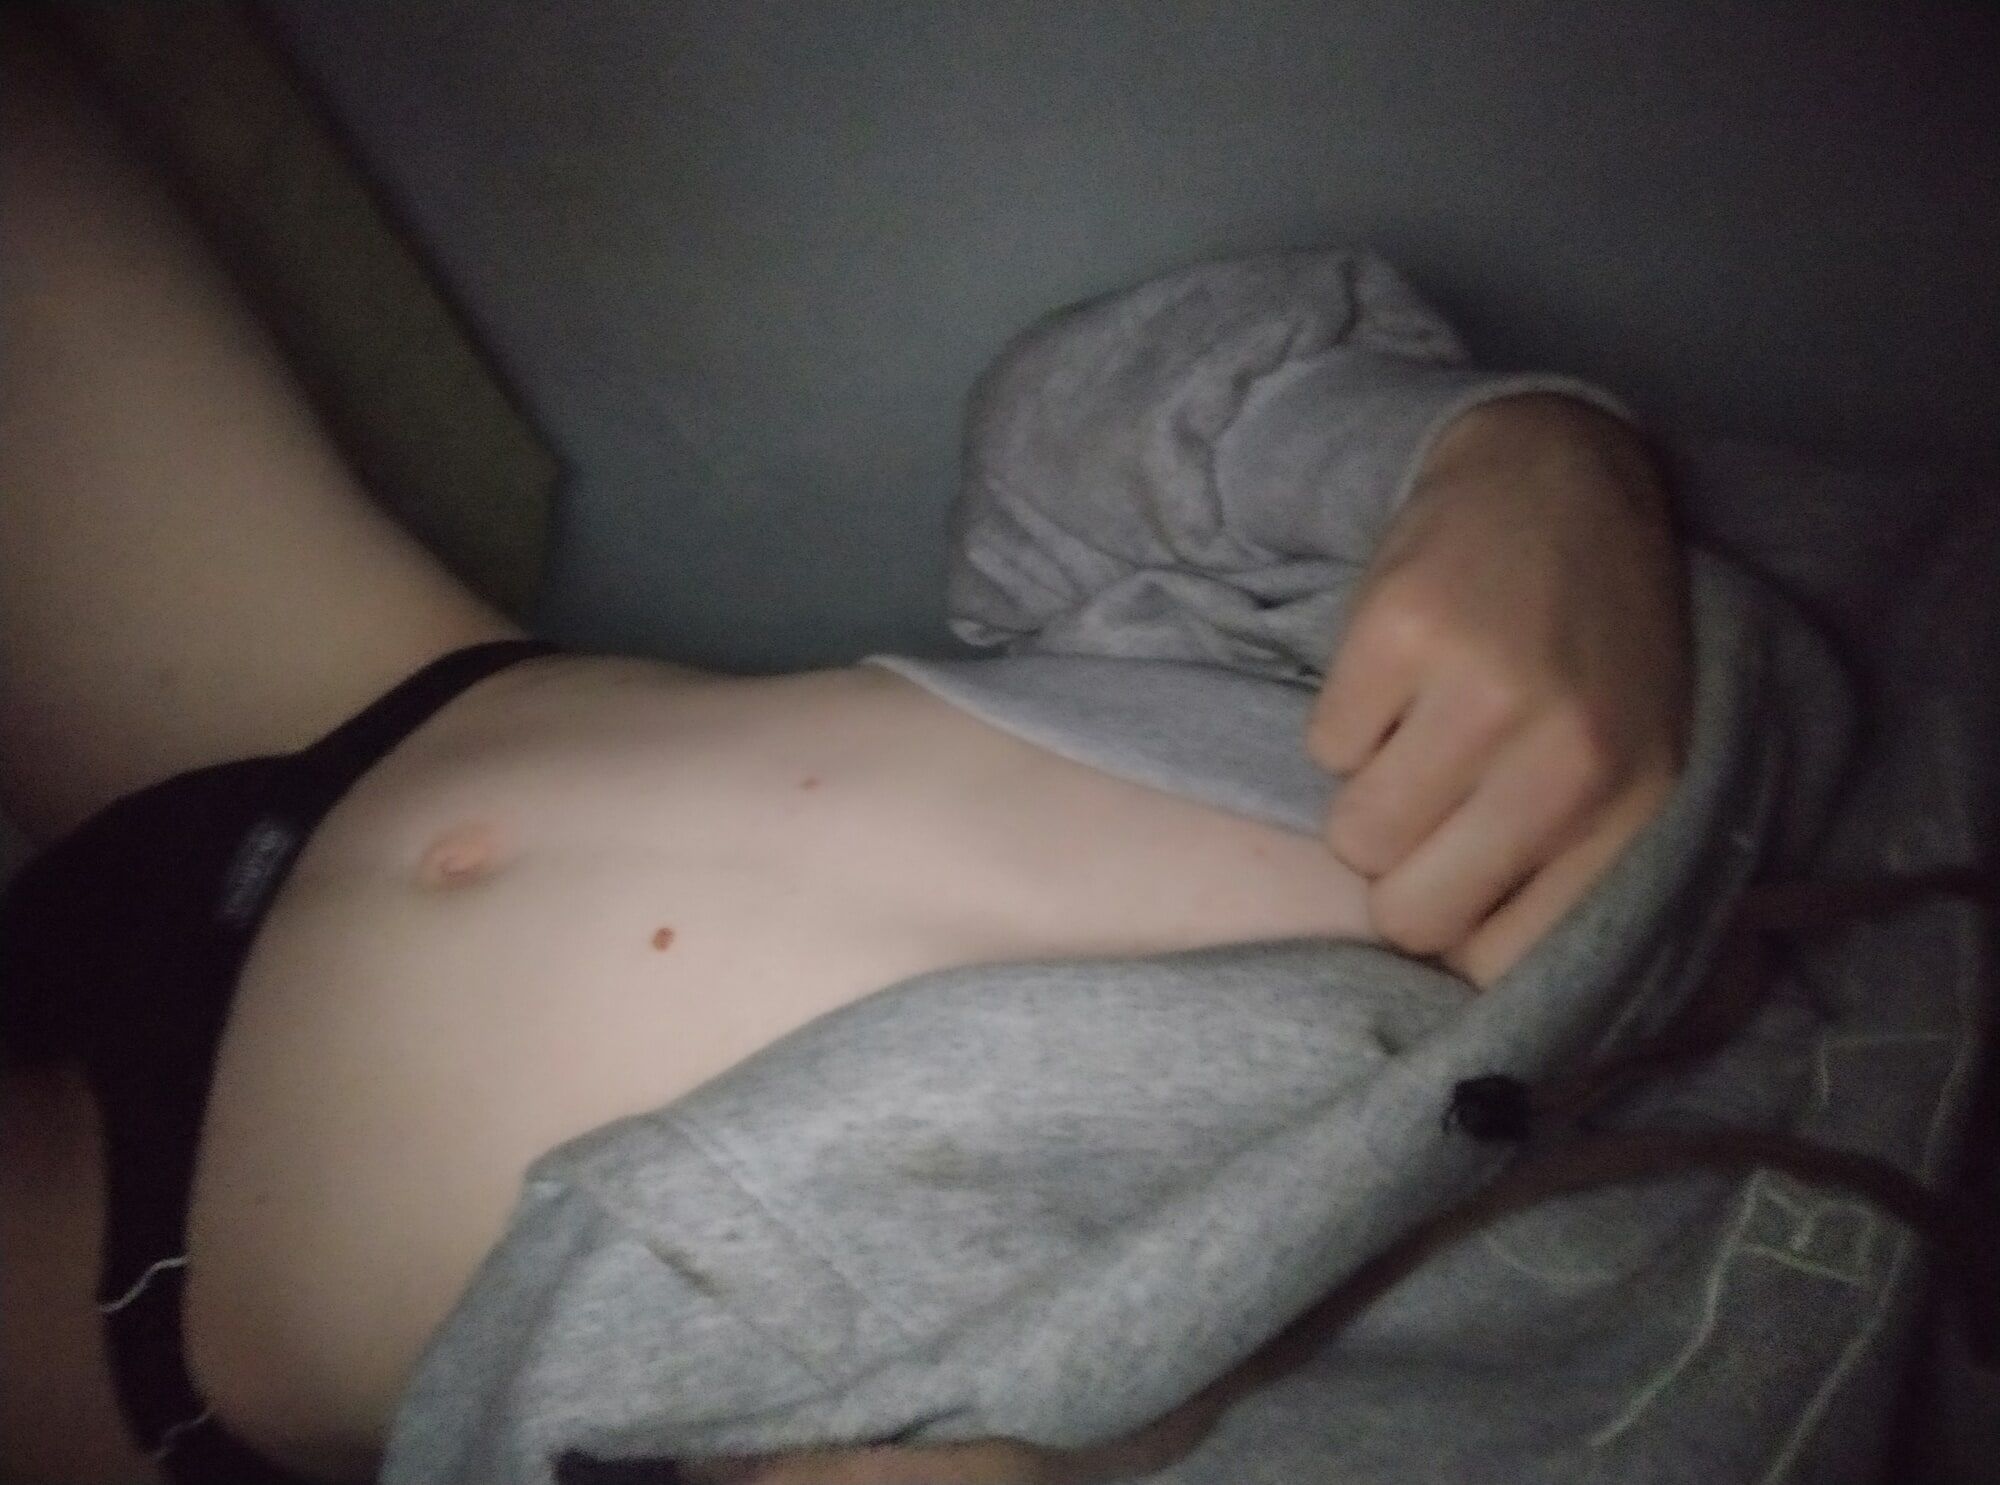 boy showing his body in underwear #9